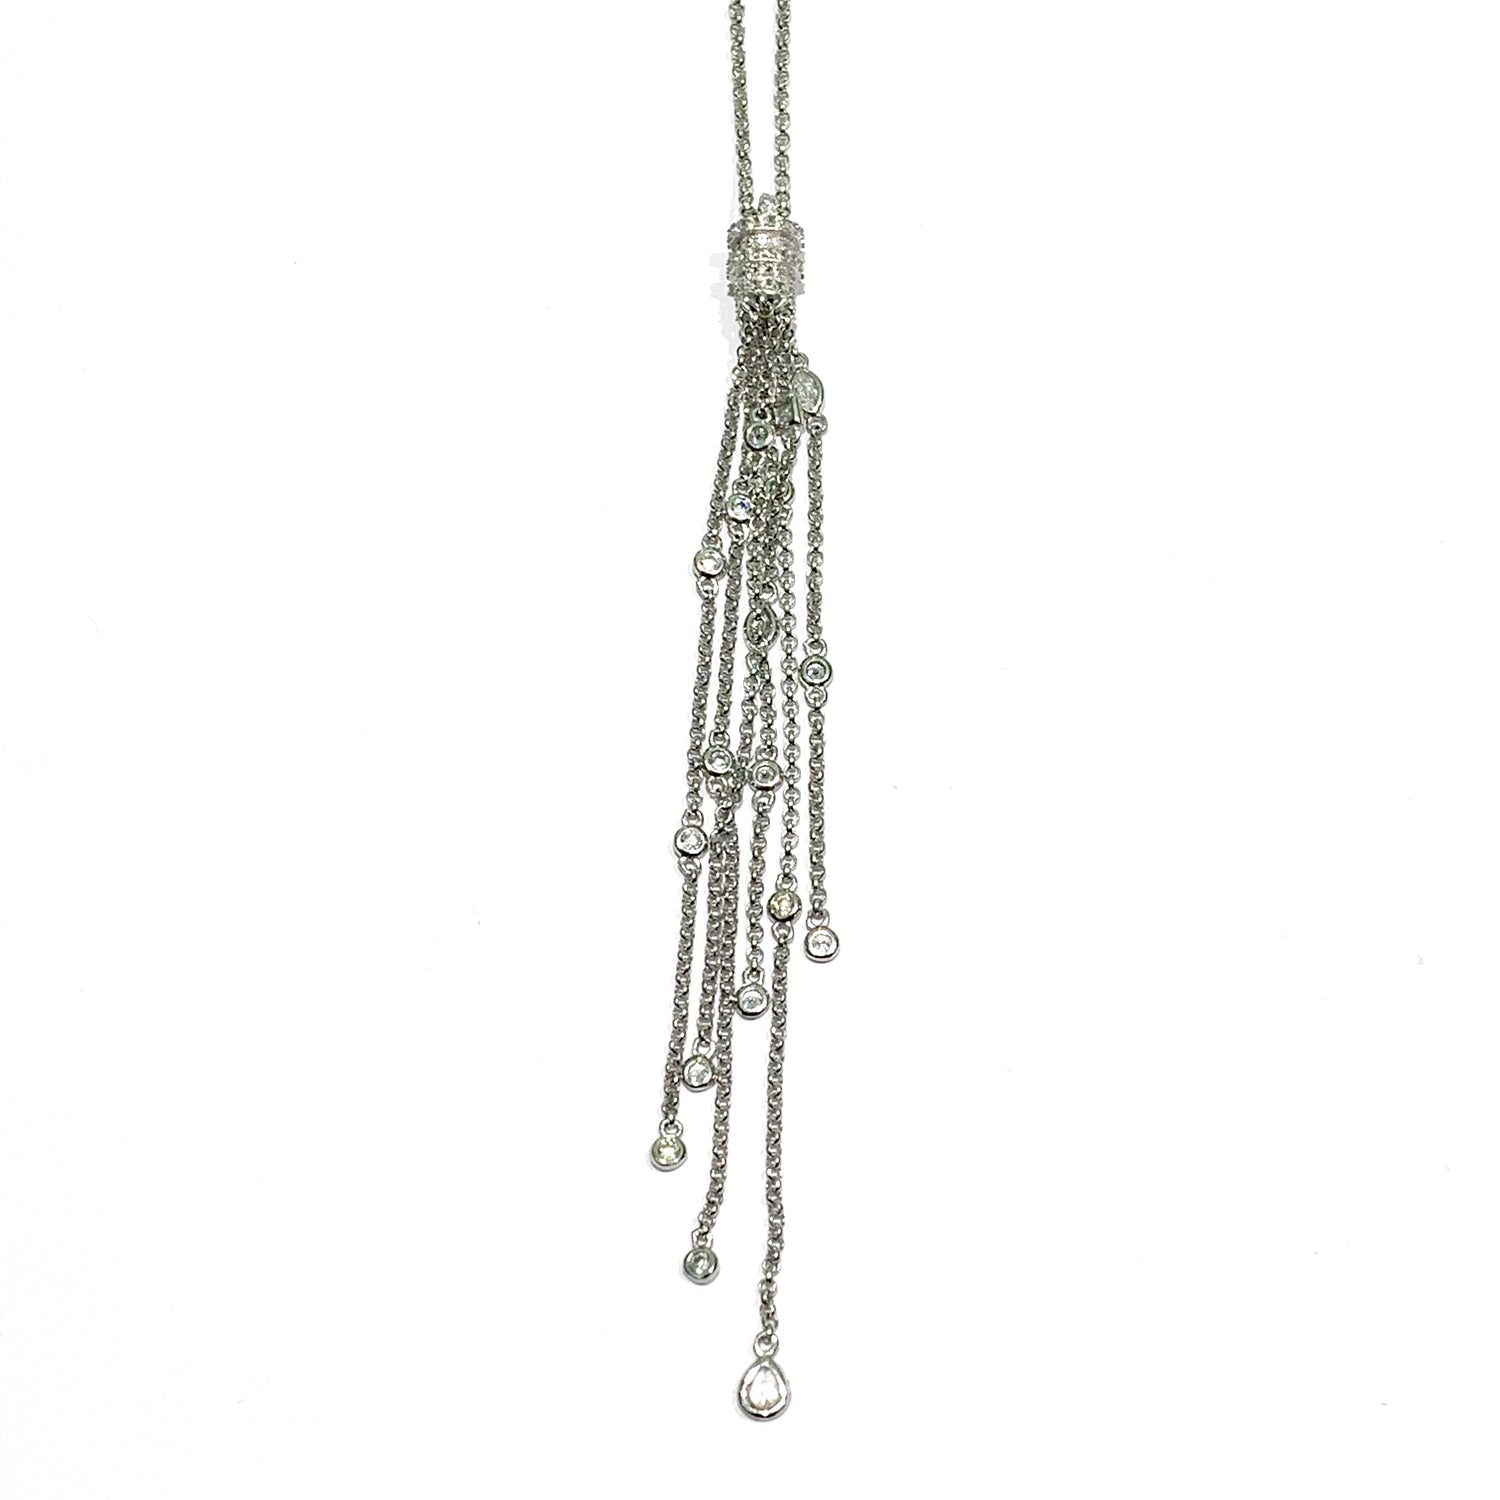 Collana in argento con ciondolo con fili pendenti.  Lunghezza catena regolabile fino a un massimo di 64 cm.  Lunghezza ciondolo pendente 10 cm.  Spedizione gratuita con confezione regalo. 